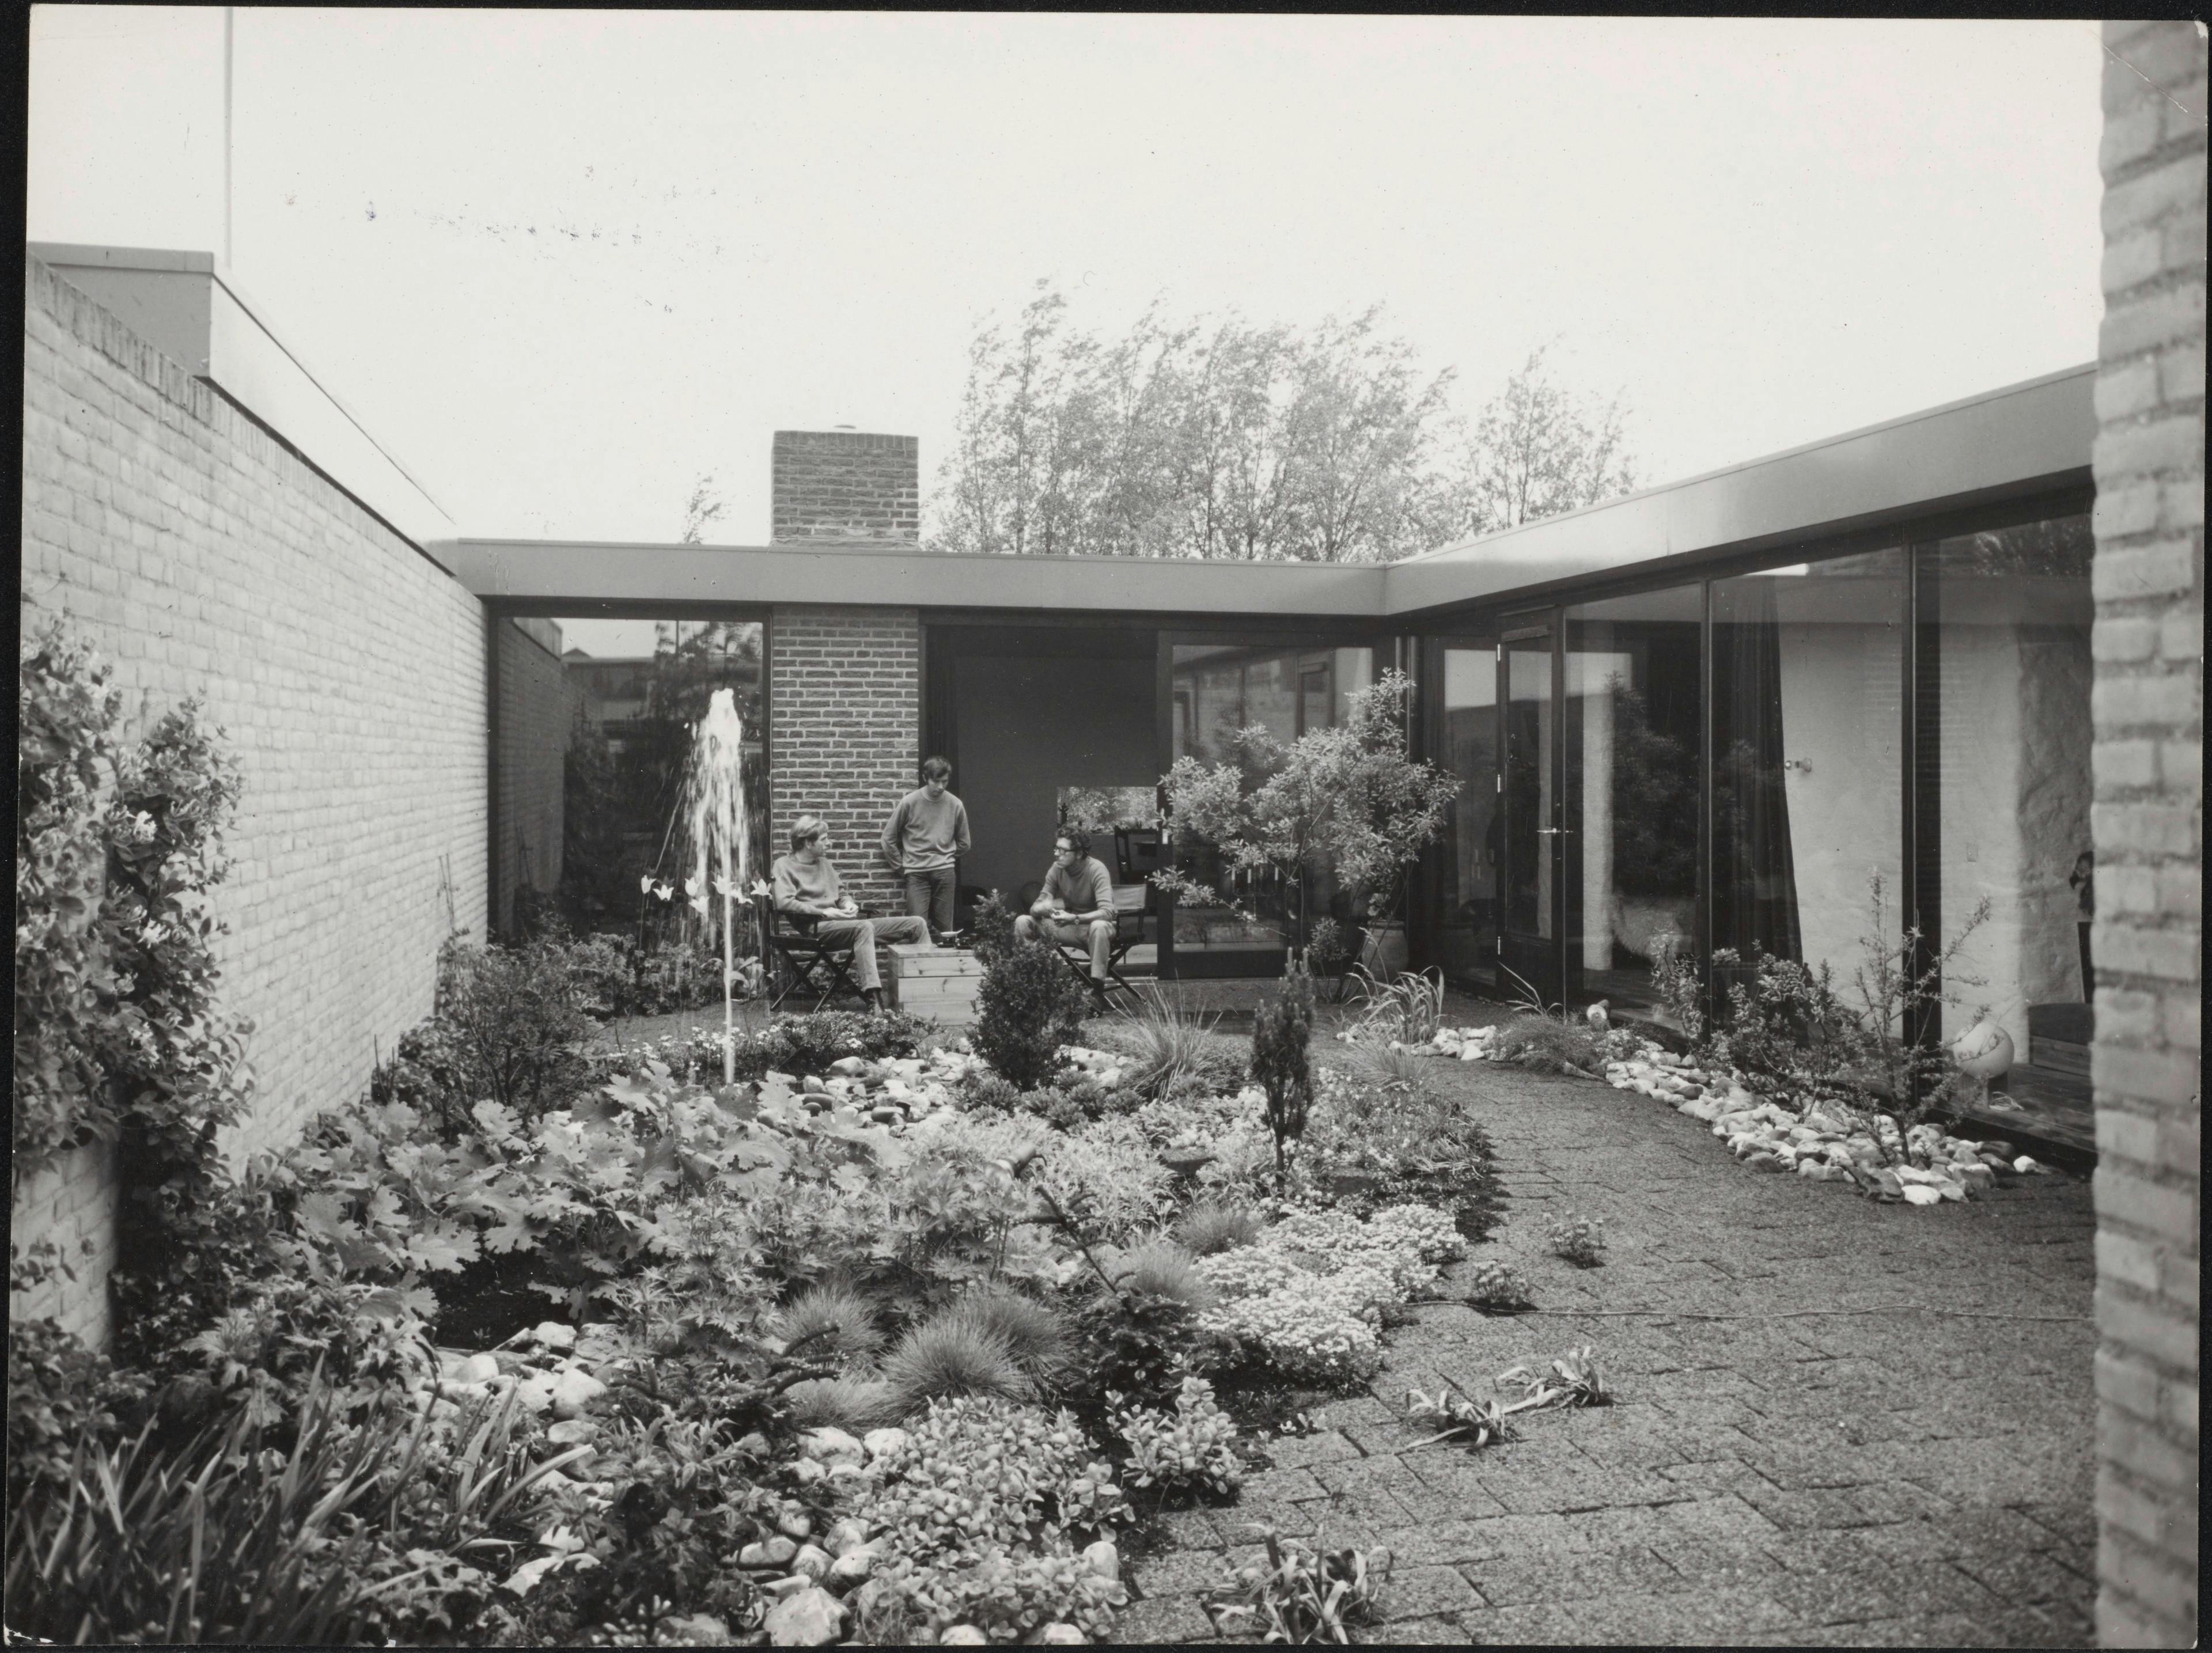  Onno Greiner. Patiowoningen aan Laan Rozenburg in Amstelveen, 1961-1966. Binnen deze reeks ontwierp Greiner ook zijn eigen woonhuis. Tekst achterzijde foto: "Onze eigen tuin". Foto Studio Hartland. Collectie Nieuwe Instituut, GREO 61018f1-54a.